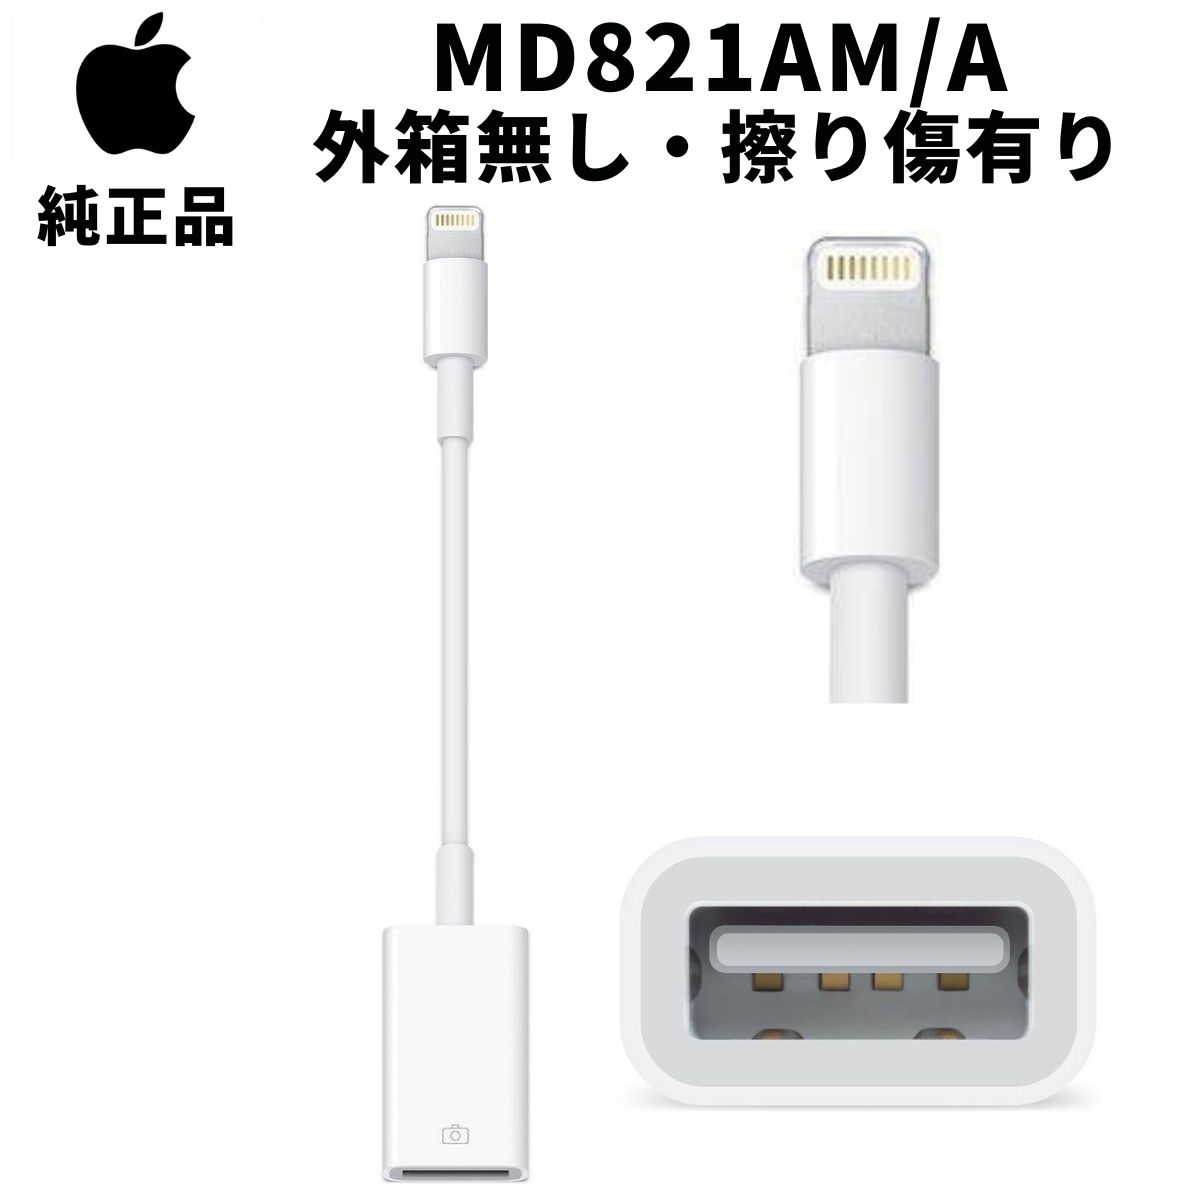 【外箱無し・擦り傷有り】Apple 純正 MD821AM/A Lightning USBカメラアダプタ アップル純正 並行輸入品 ライトニング iPad iPhone